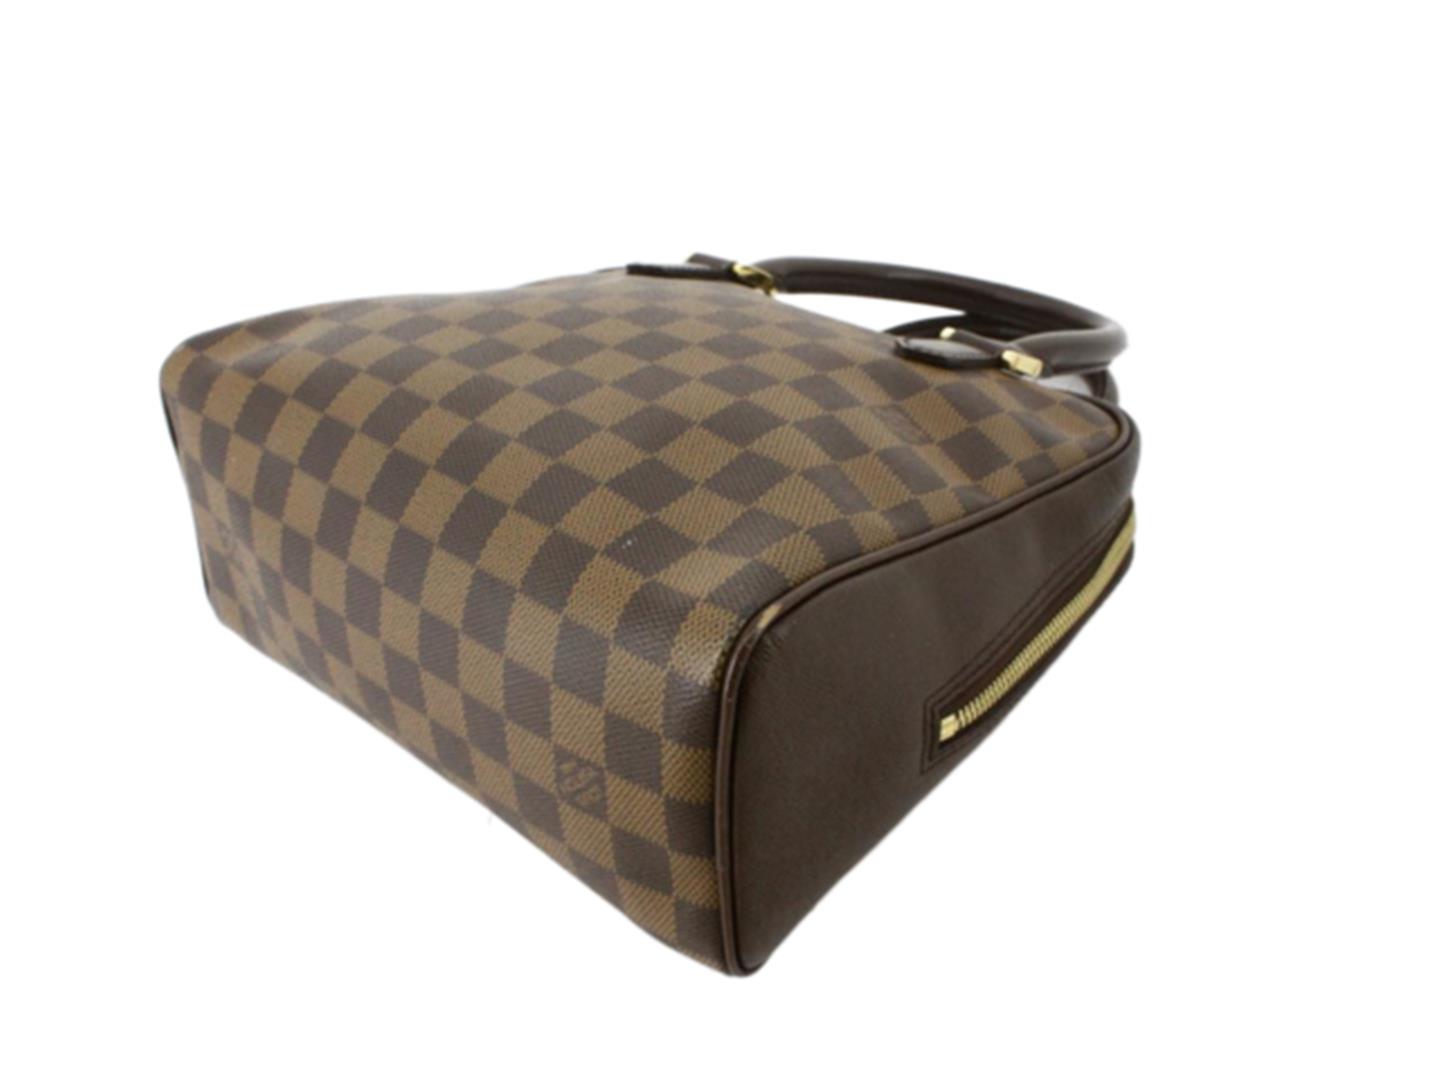 At Auction: Louis Vuitton, Louis Vuitton Damier Ebene Brera Top Handle Bag